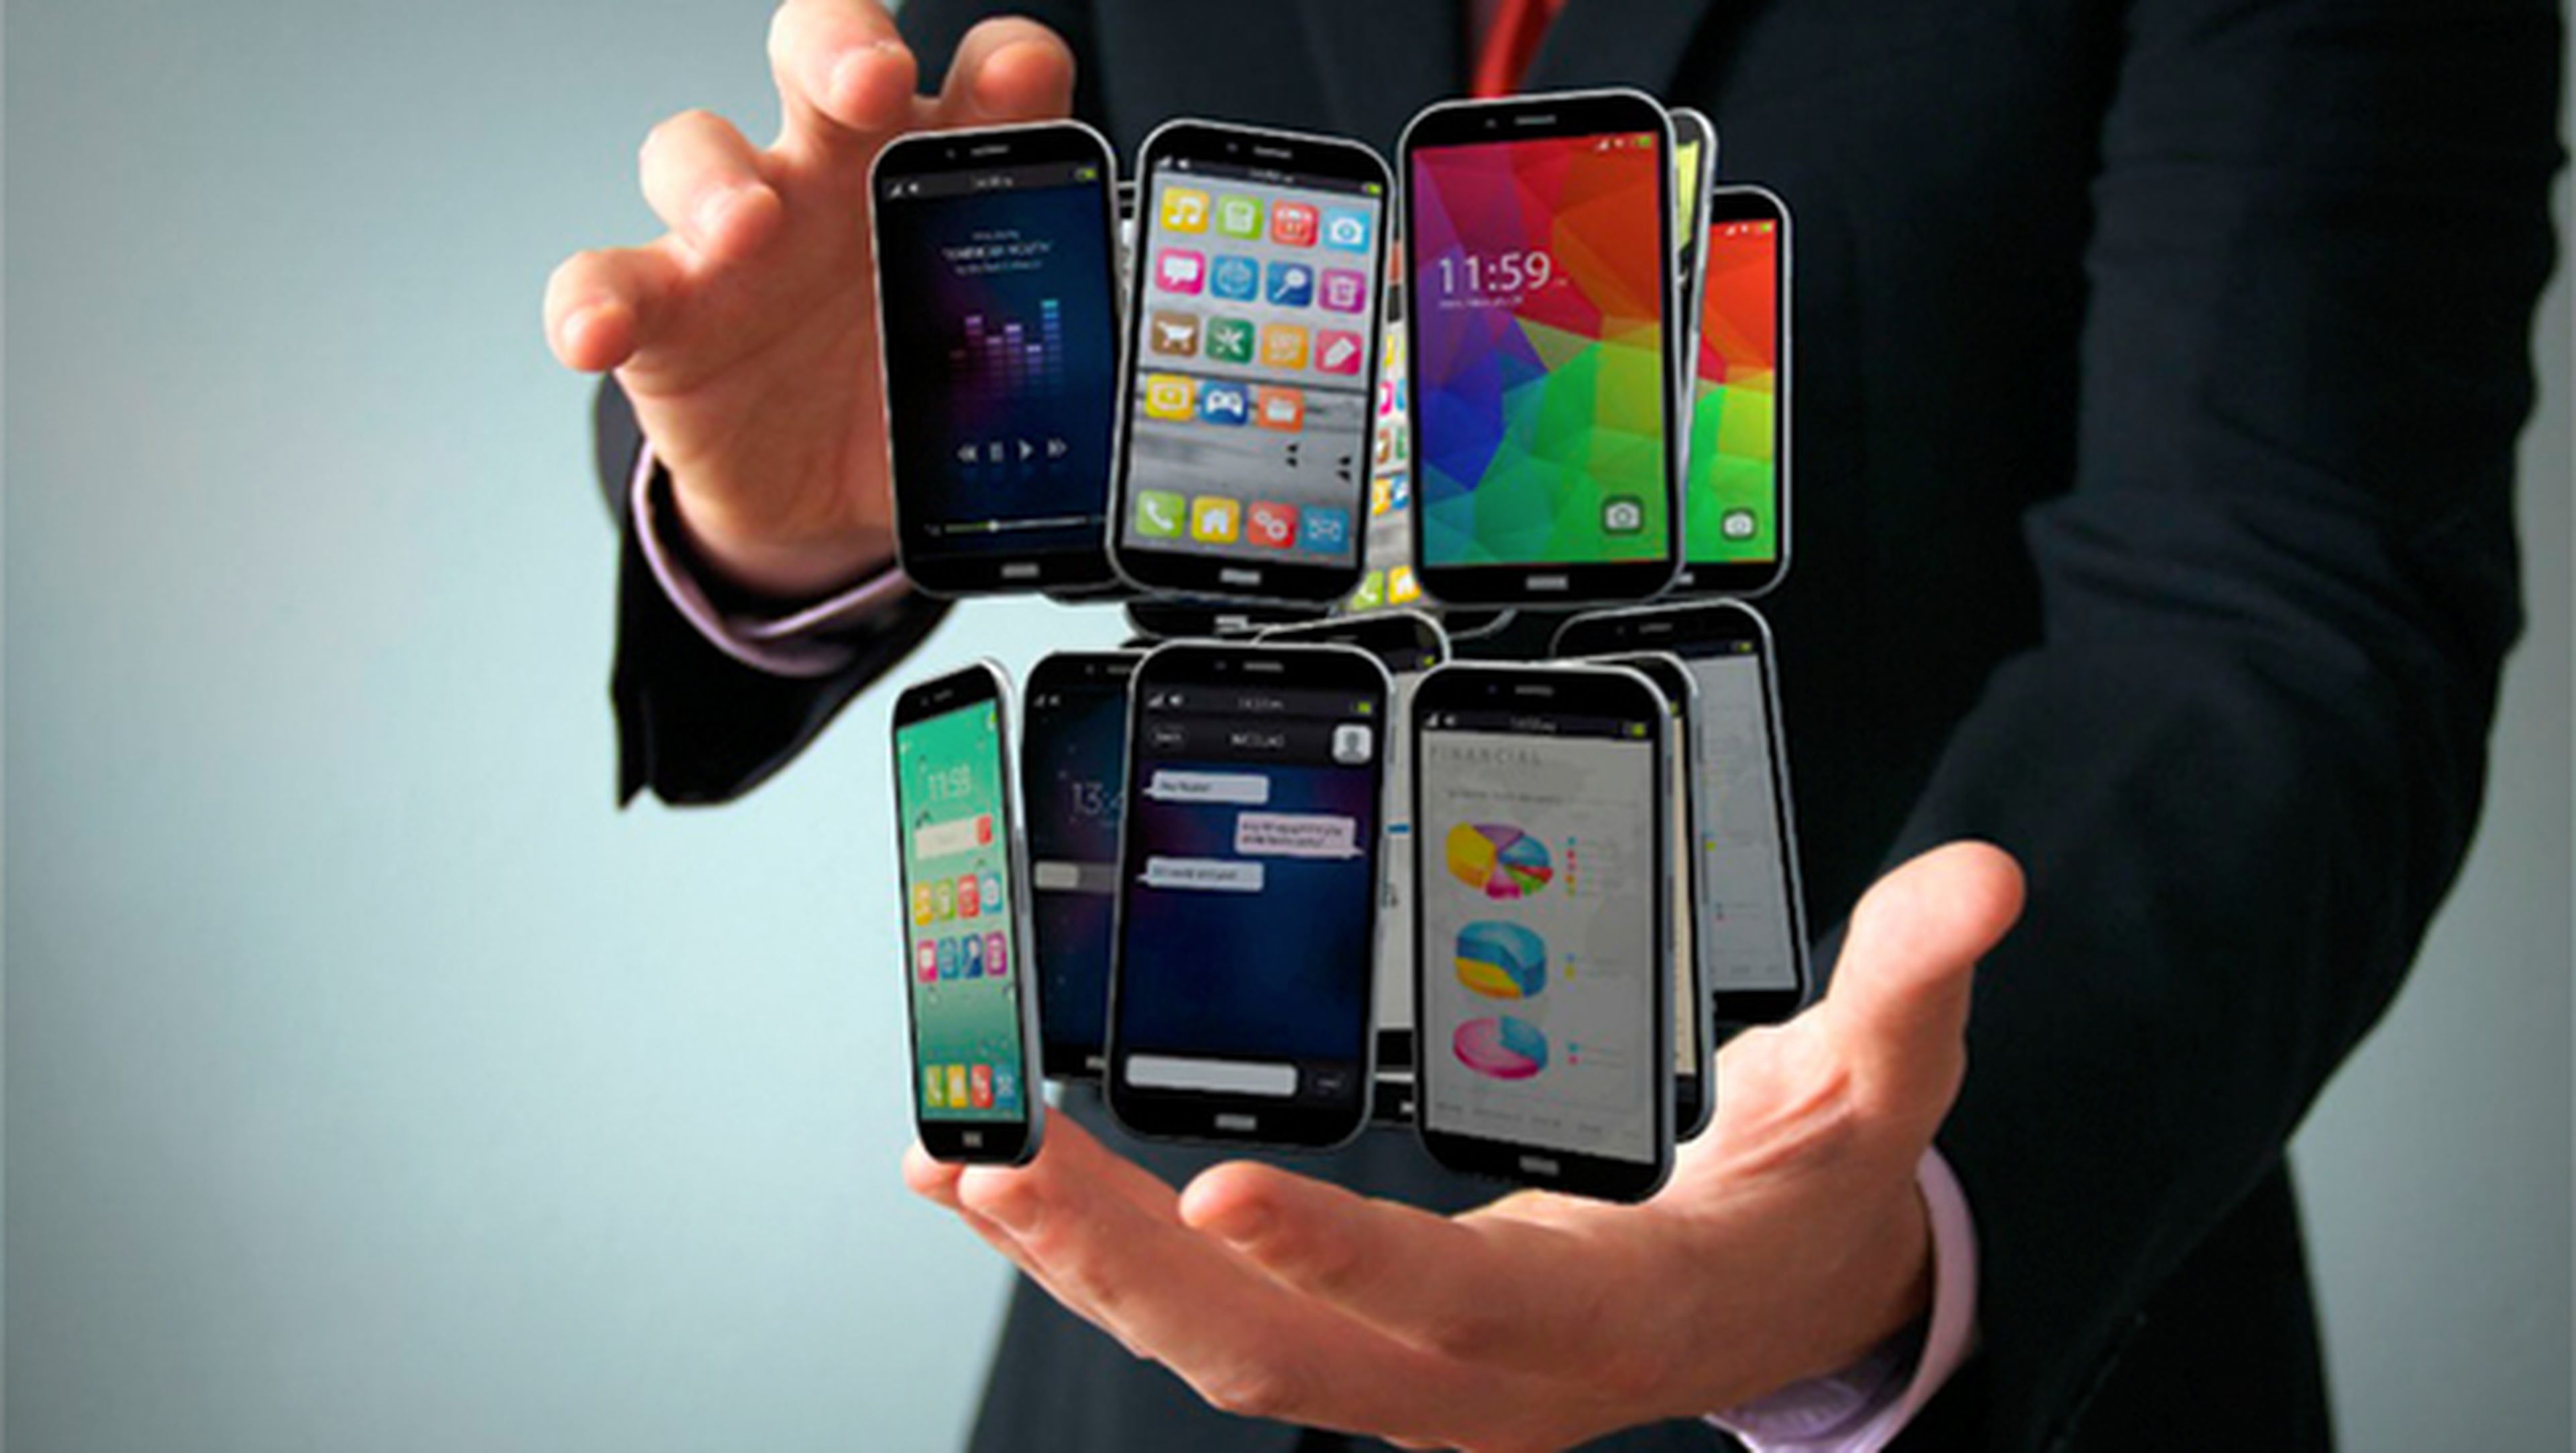 Móviles y smartphones libres, baratos y económicos (2)